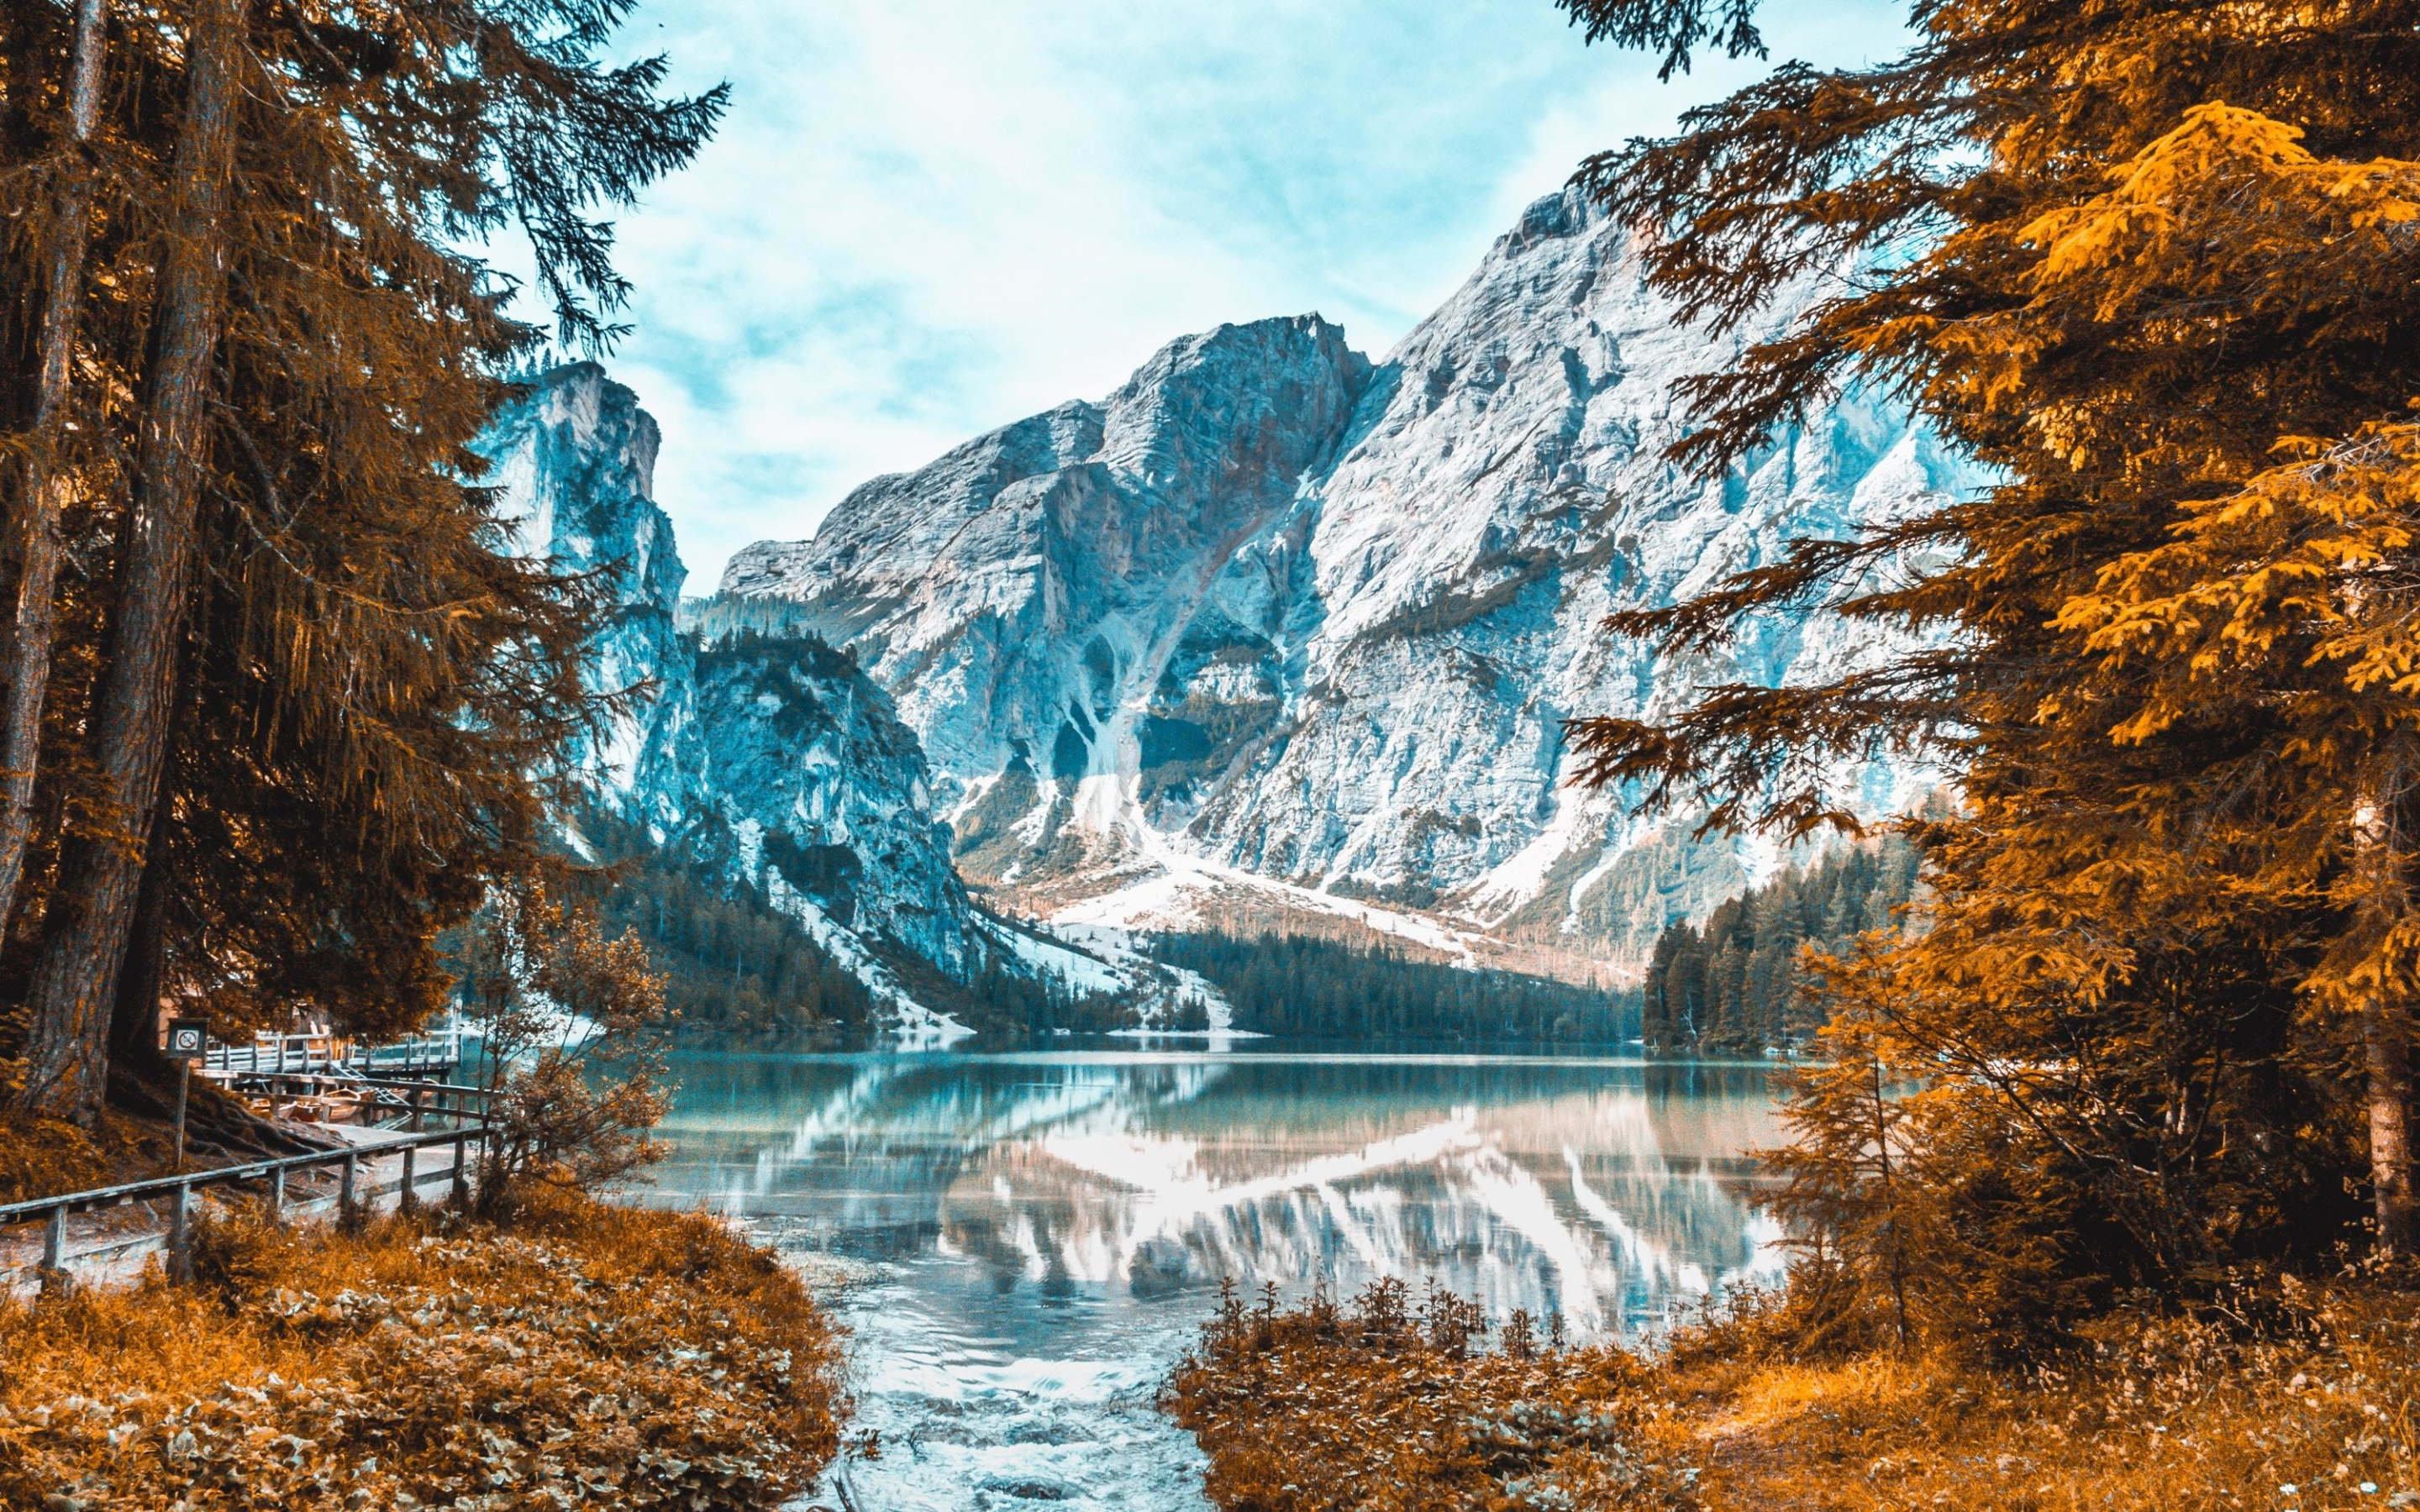 Snow-capped mountain, autumn, lake, nature, 2880x1800 wallpaper